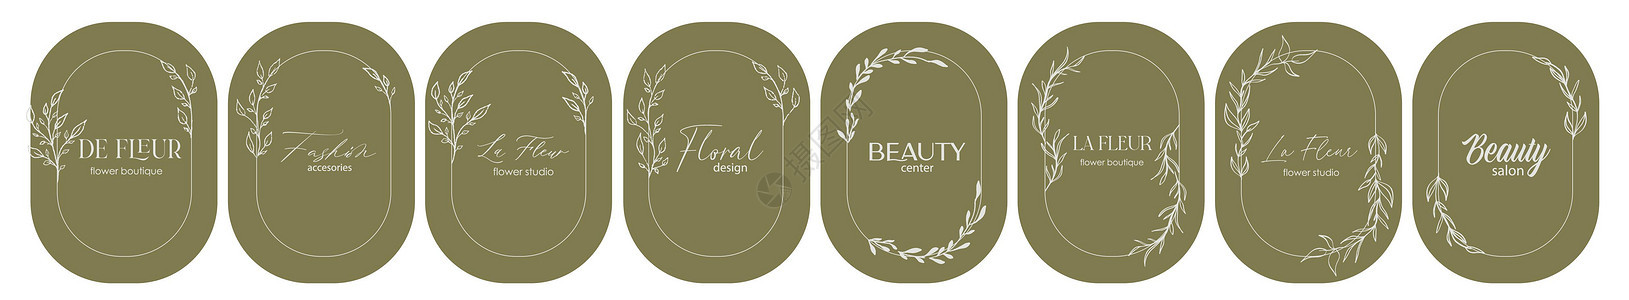 标志设计模板和会标概念在时尚线性风格与框架 时尚美容和珠宝婚礼邀请社会的象征  La Fleur法语中的花玫瑰奢华花园温泉午餐标背景图片